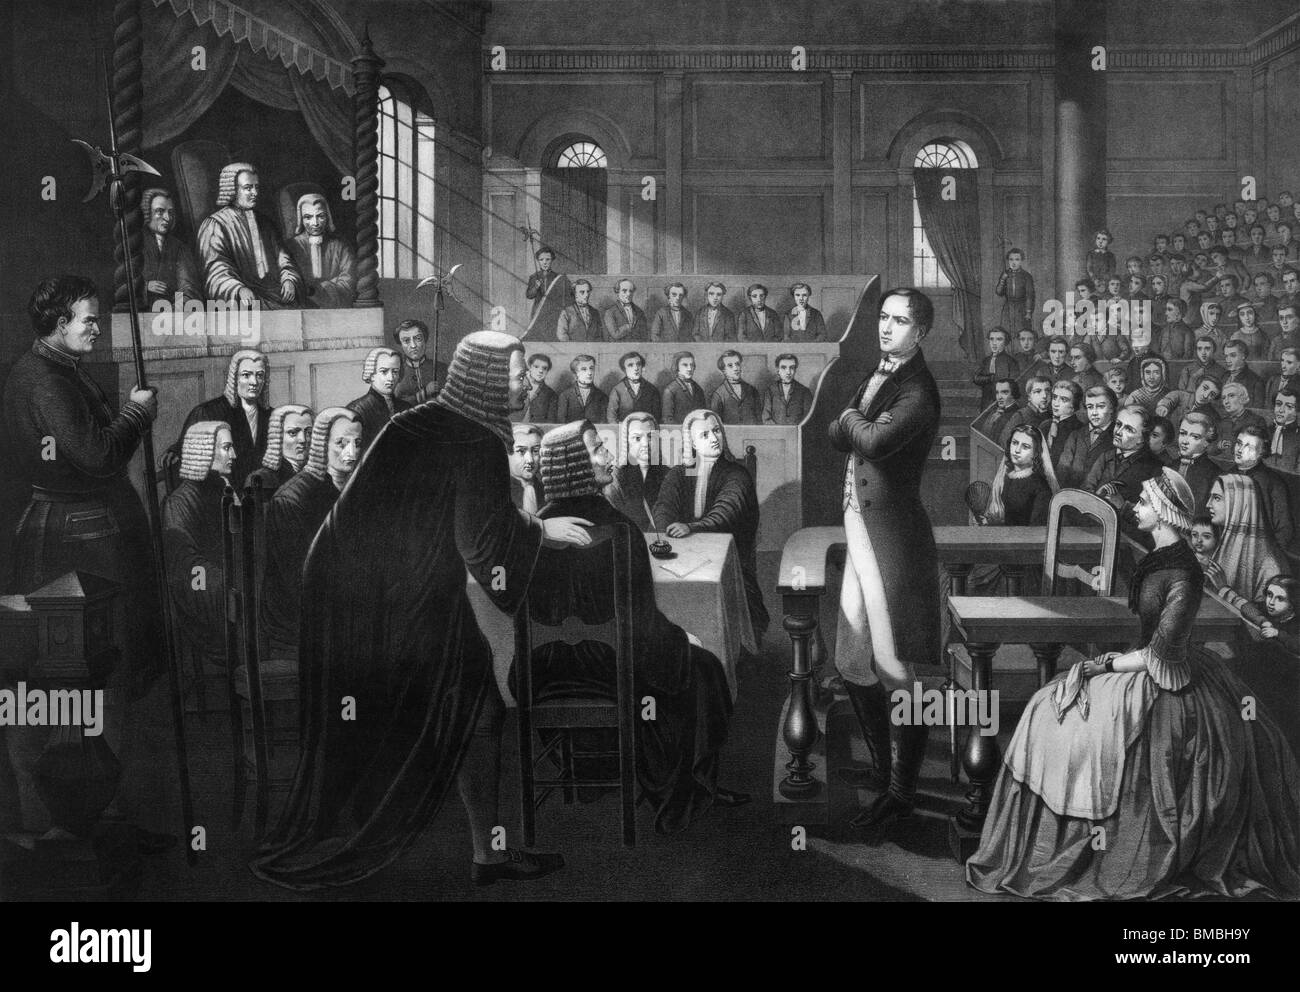 Vintage Print zeigt Studie des irischen Nationalisten Robert Emmet (1778-1803) - Anführer 1803 Rebellion gegen die britische Herrschaft. Stockfoto